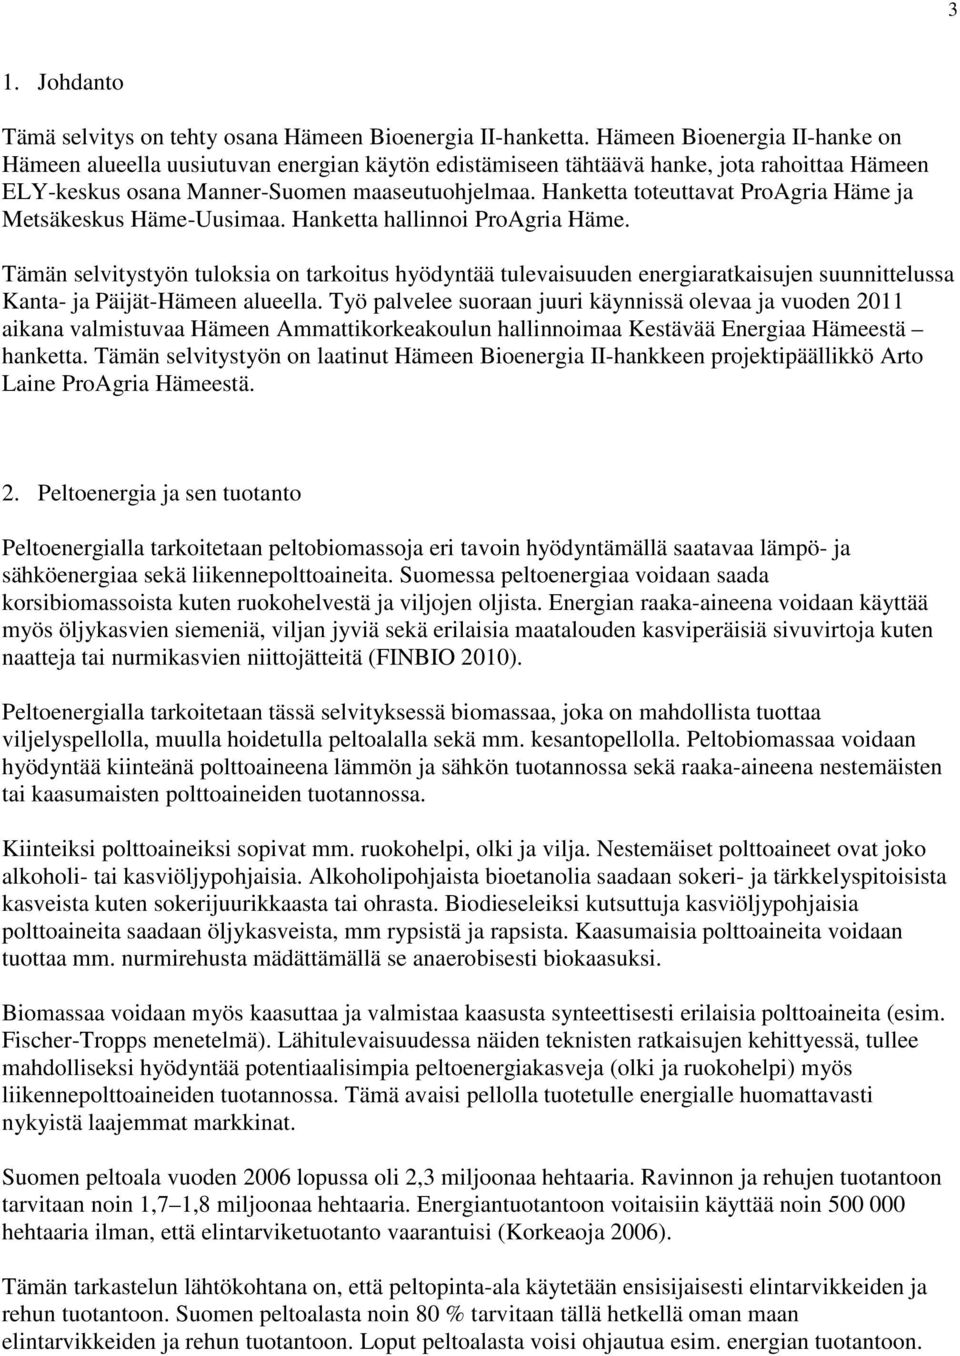 Hanketta toteuttavat ProAgria Häme ja Metsäkeskus Häme-Uusimaa. Hanketta llinnoi ProAgria Häme.